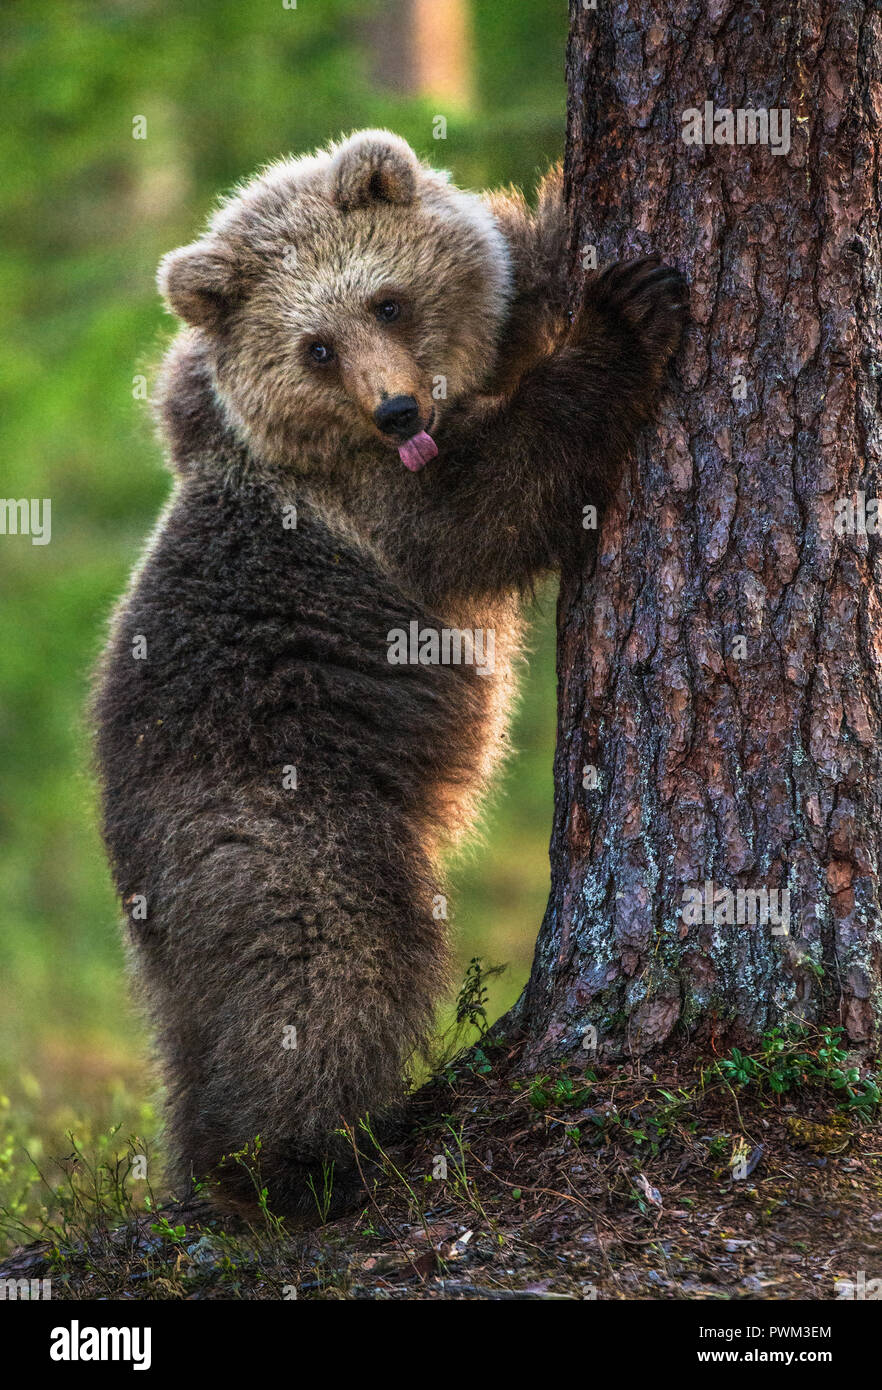 Bear Cub si fermò sulle sue zampe posteriori e mostra la linguetta, teasing. Cub di orso bruno. Habitat naturale. In estate foresta. Nome Sceintific: Ursus arctos. Foto Stock